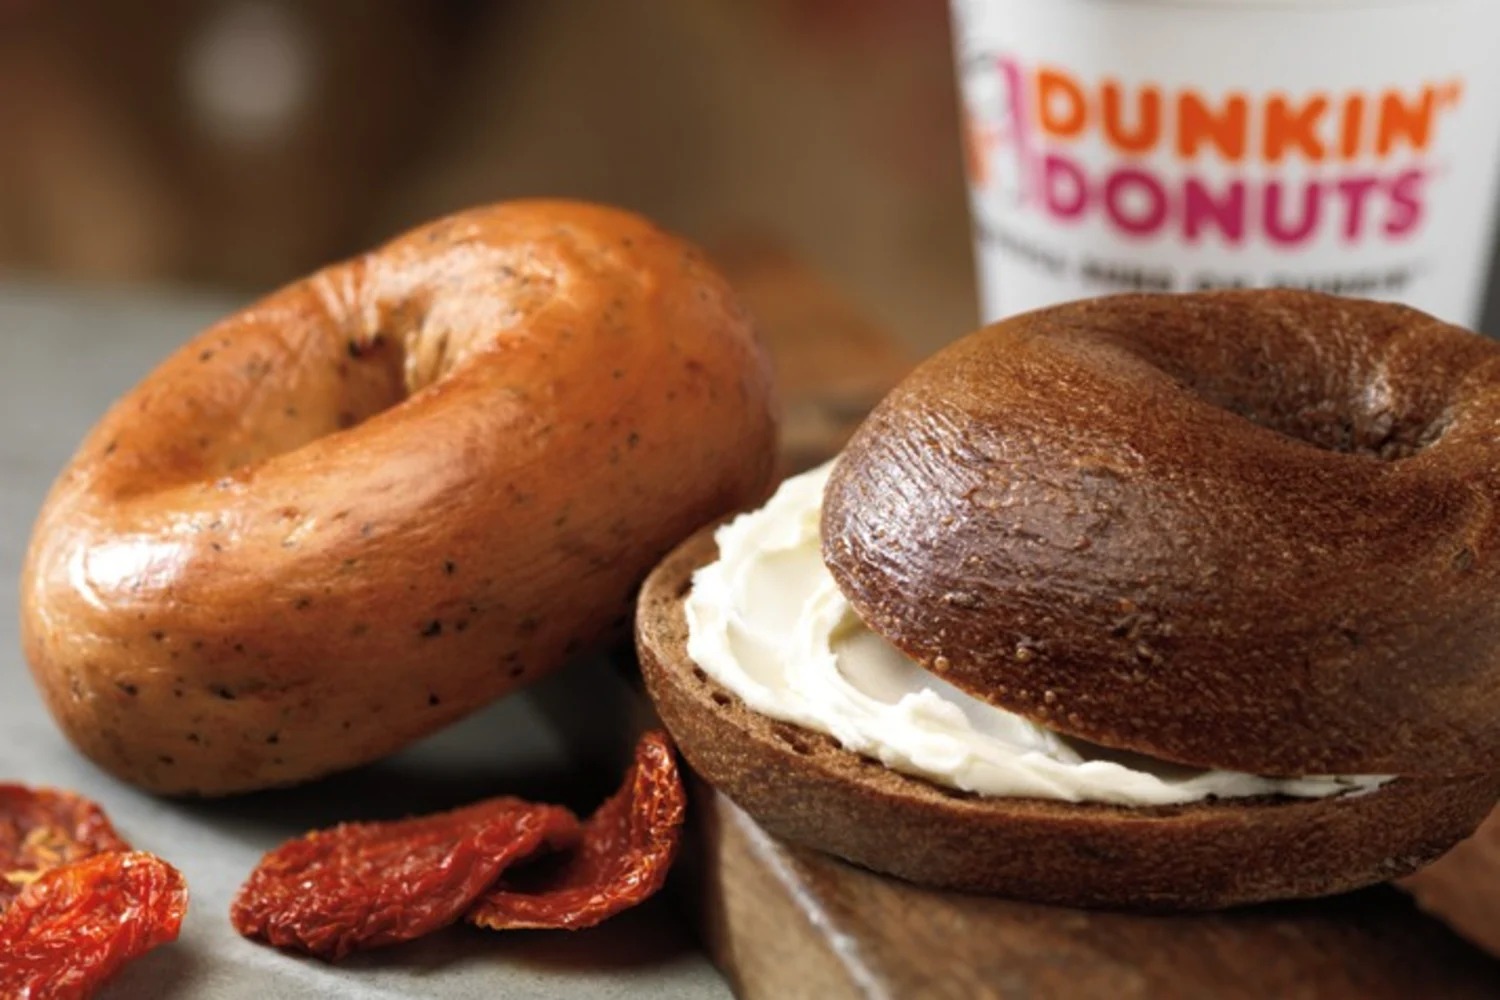 10-dunkin-donuts-multigrain-bagel-nutrition-facts